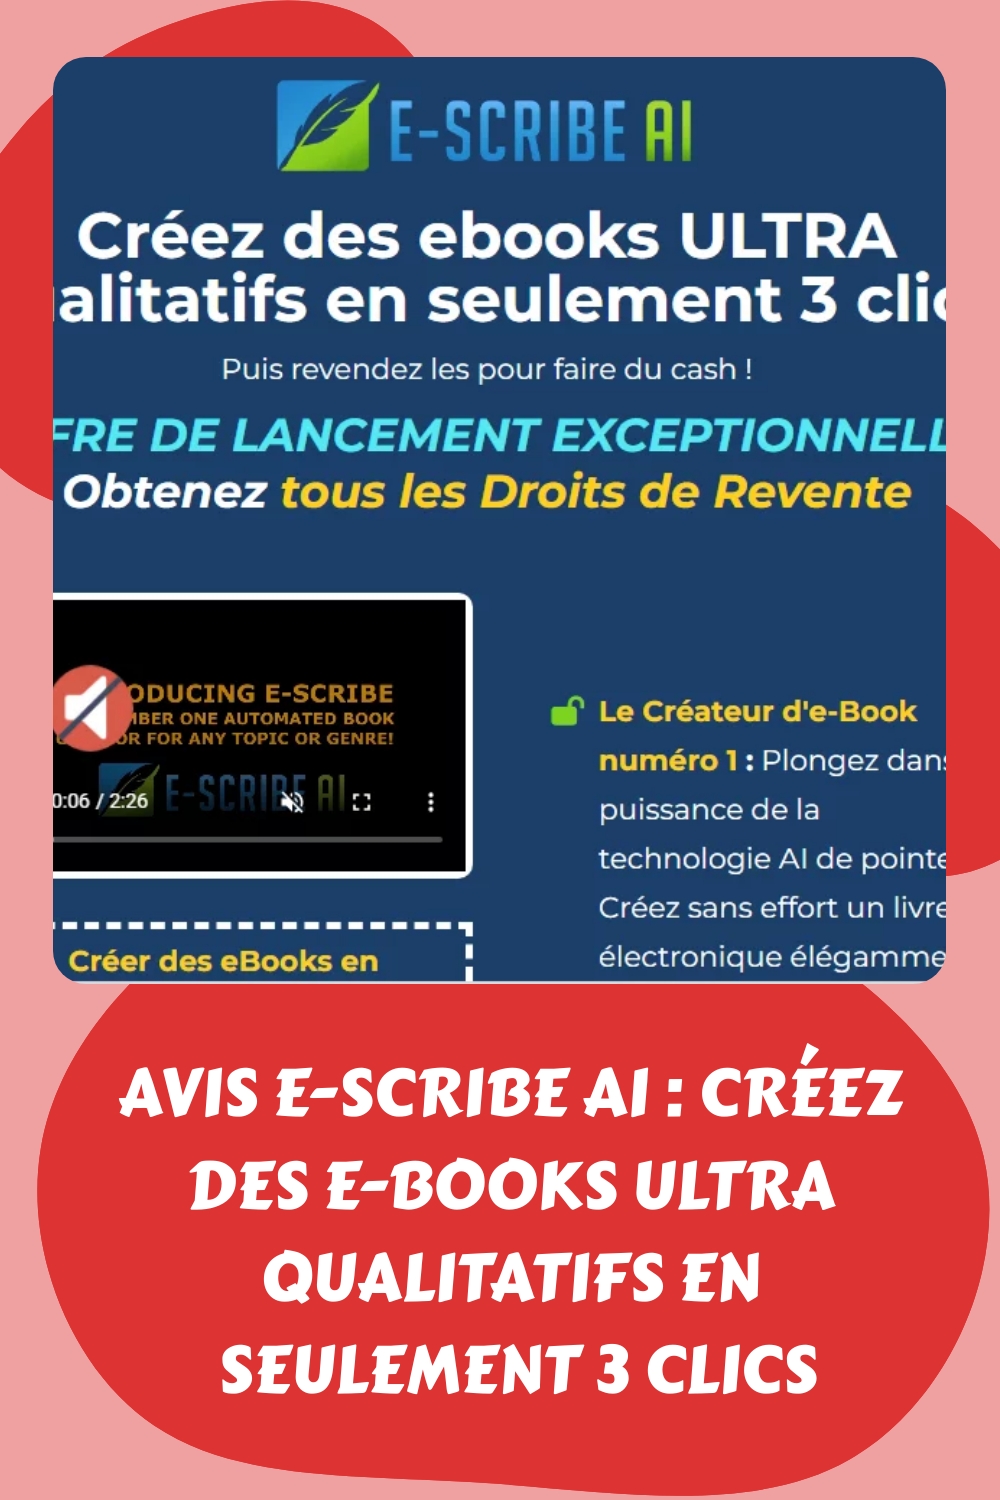 Avis E-SCRIBE AI : Créez des e-books ULTRA qualitatifs en seulement 3 clics